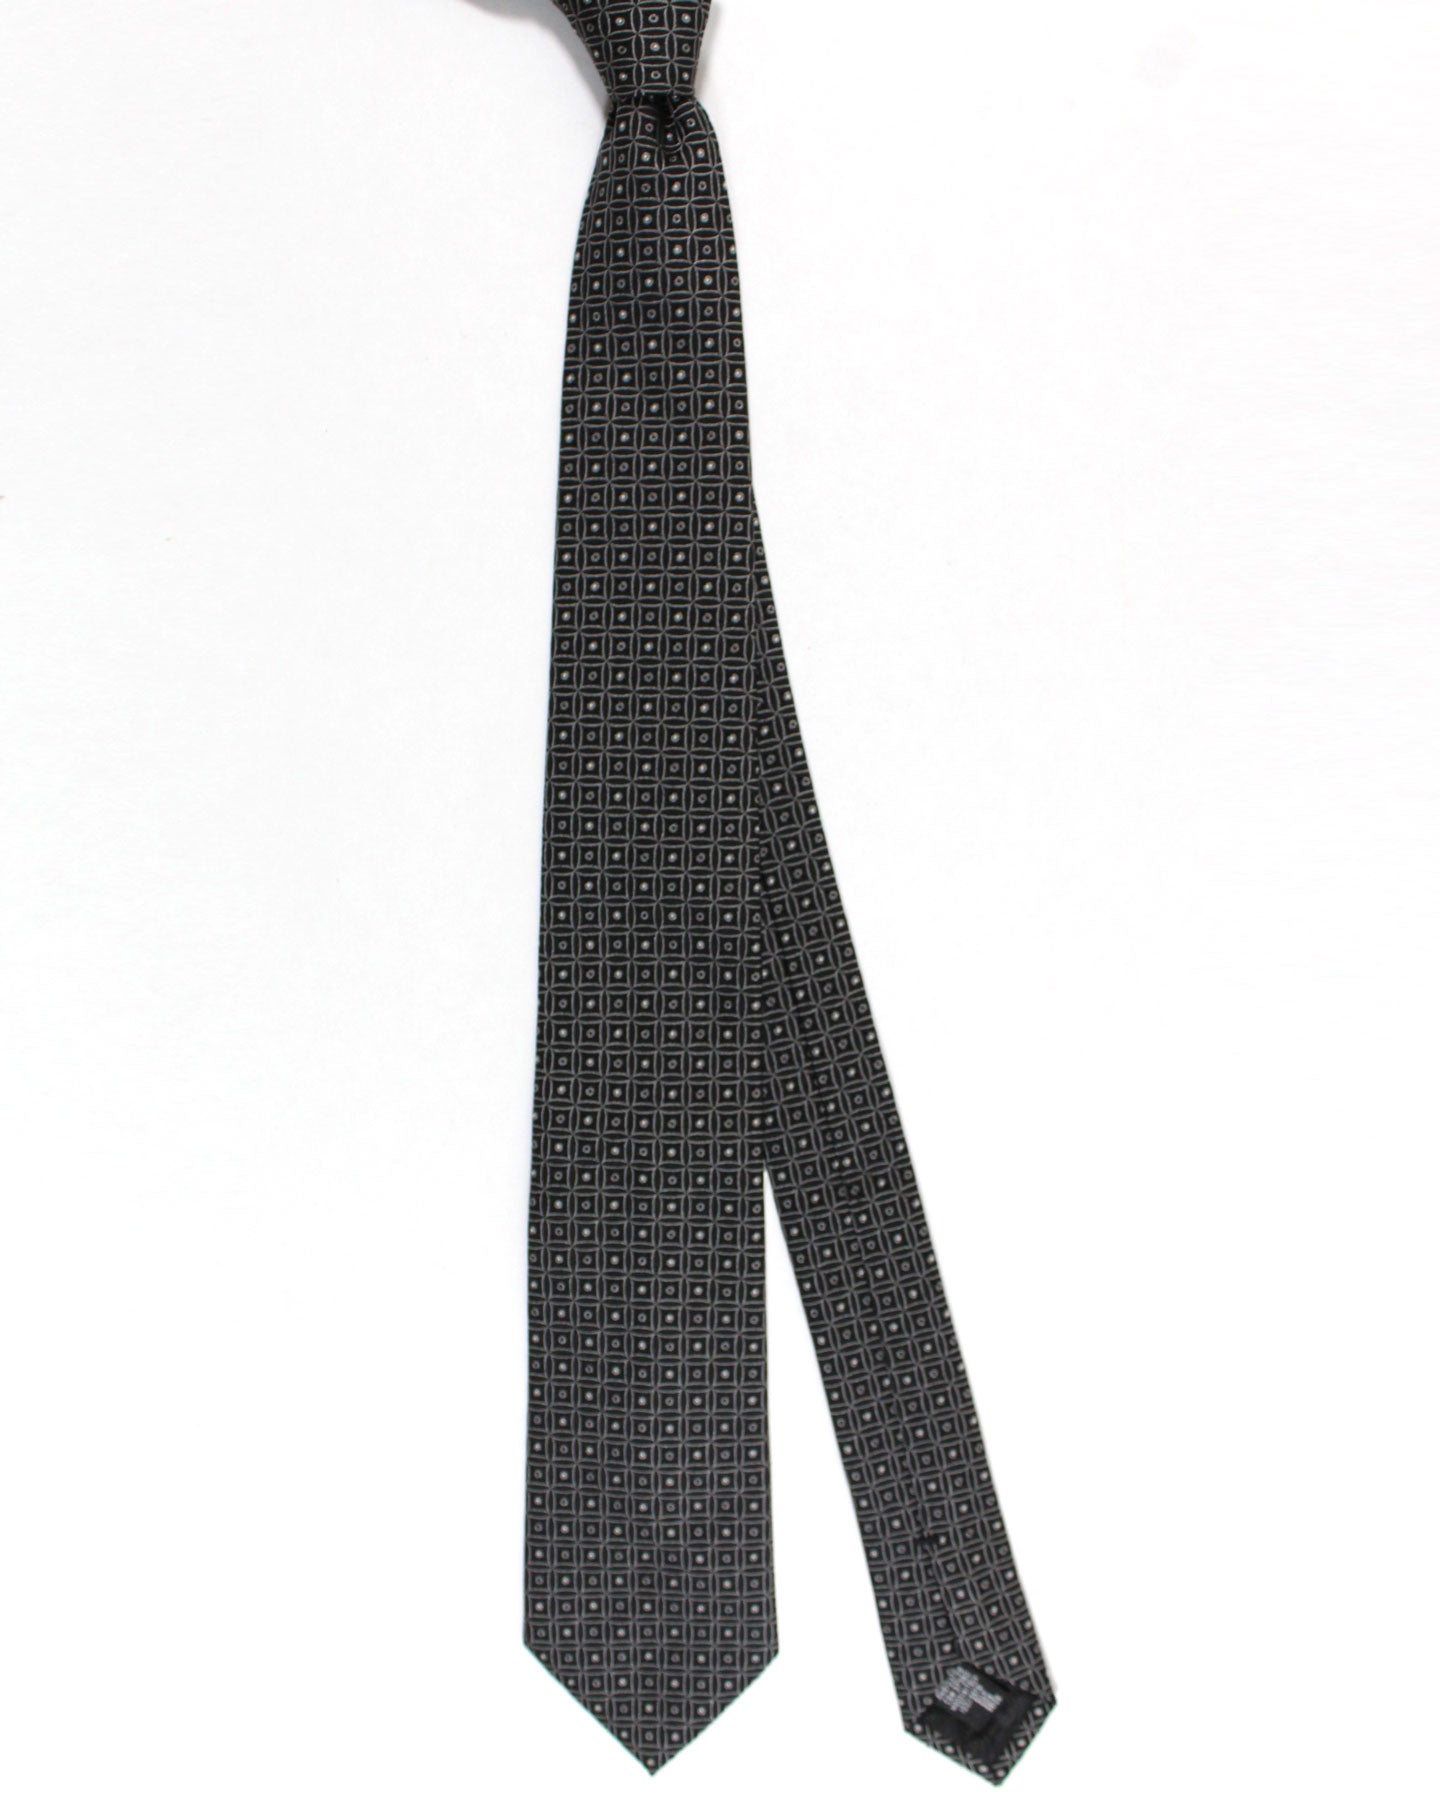 Armani Silk Tie Black Gray Geometric Armani Collezioni